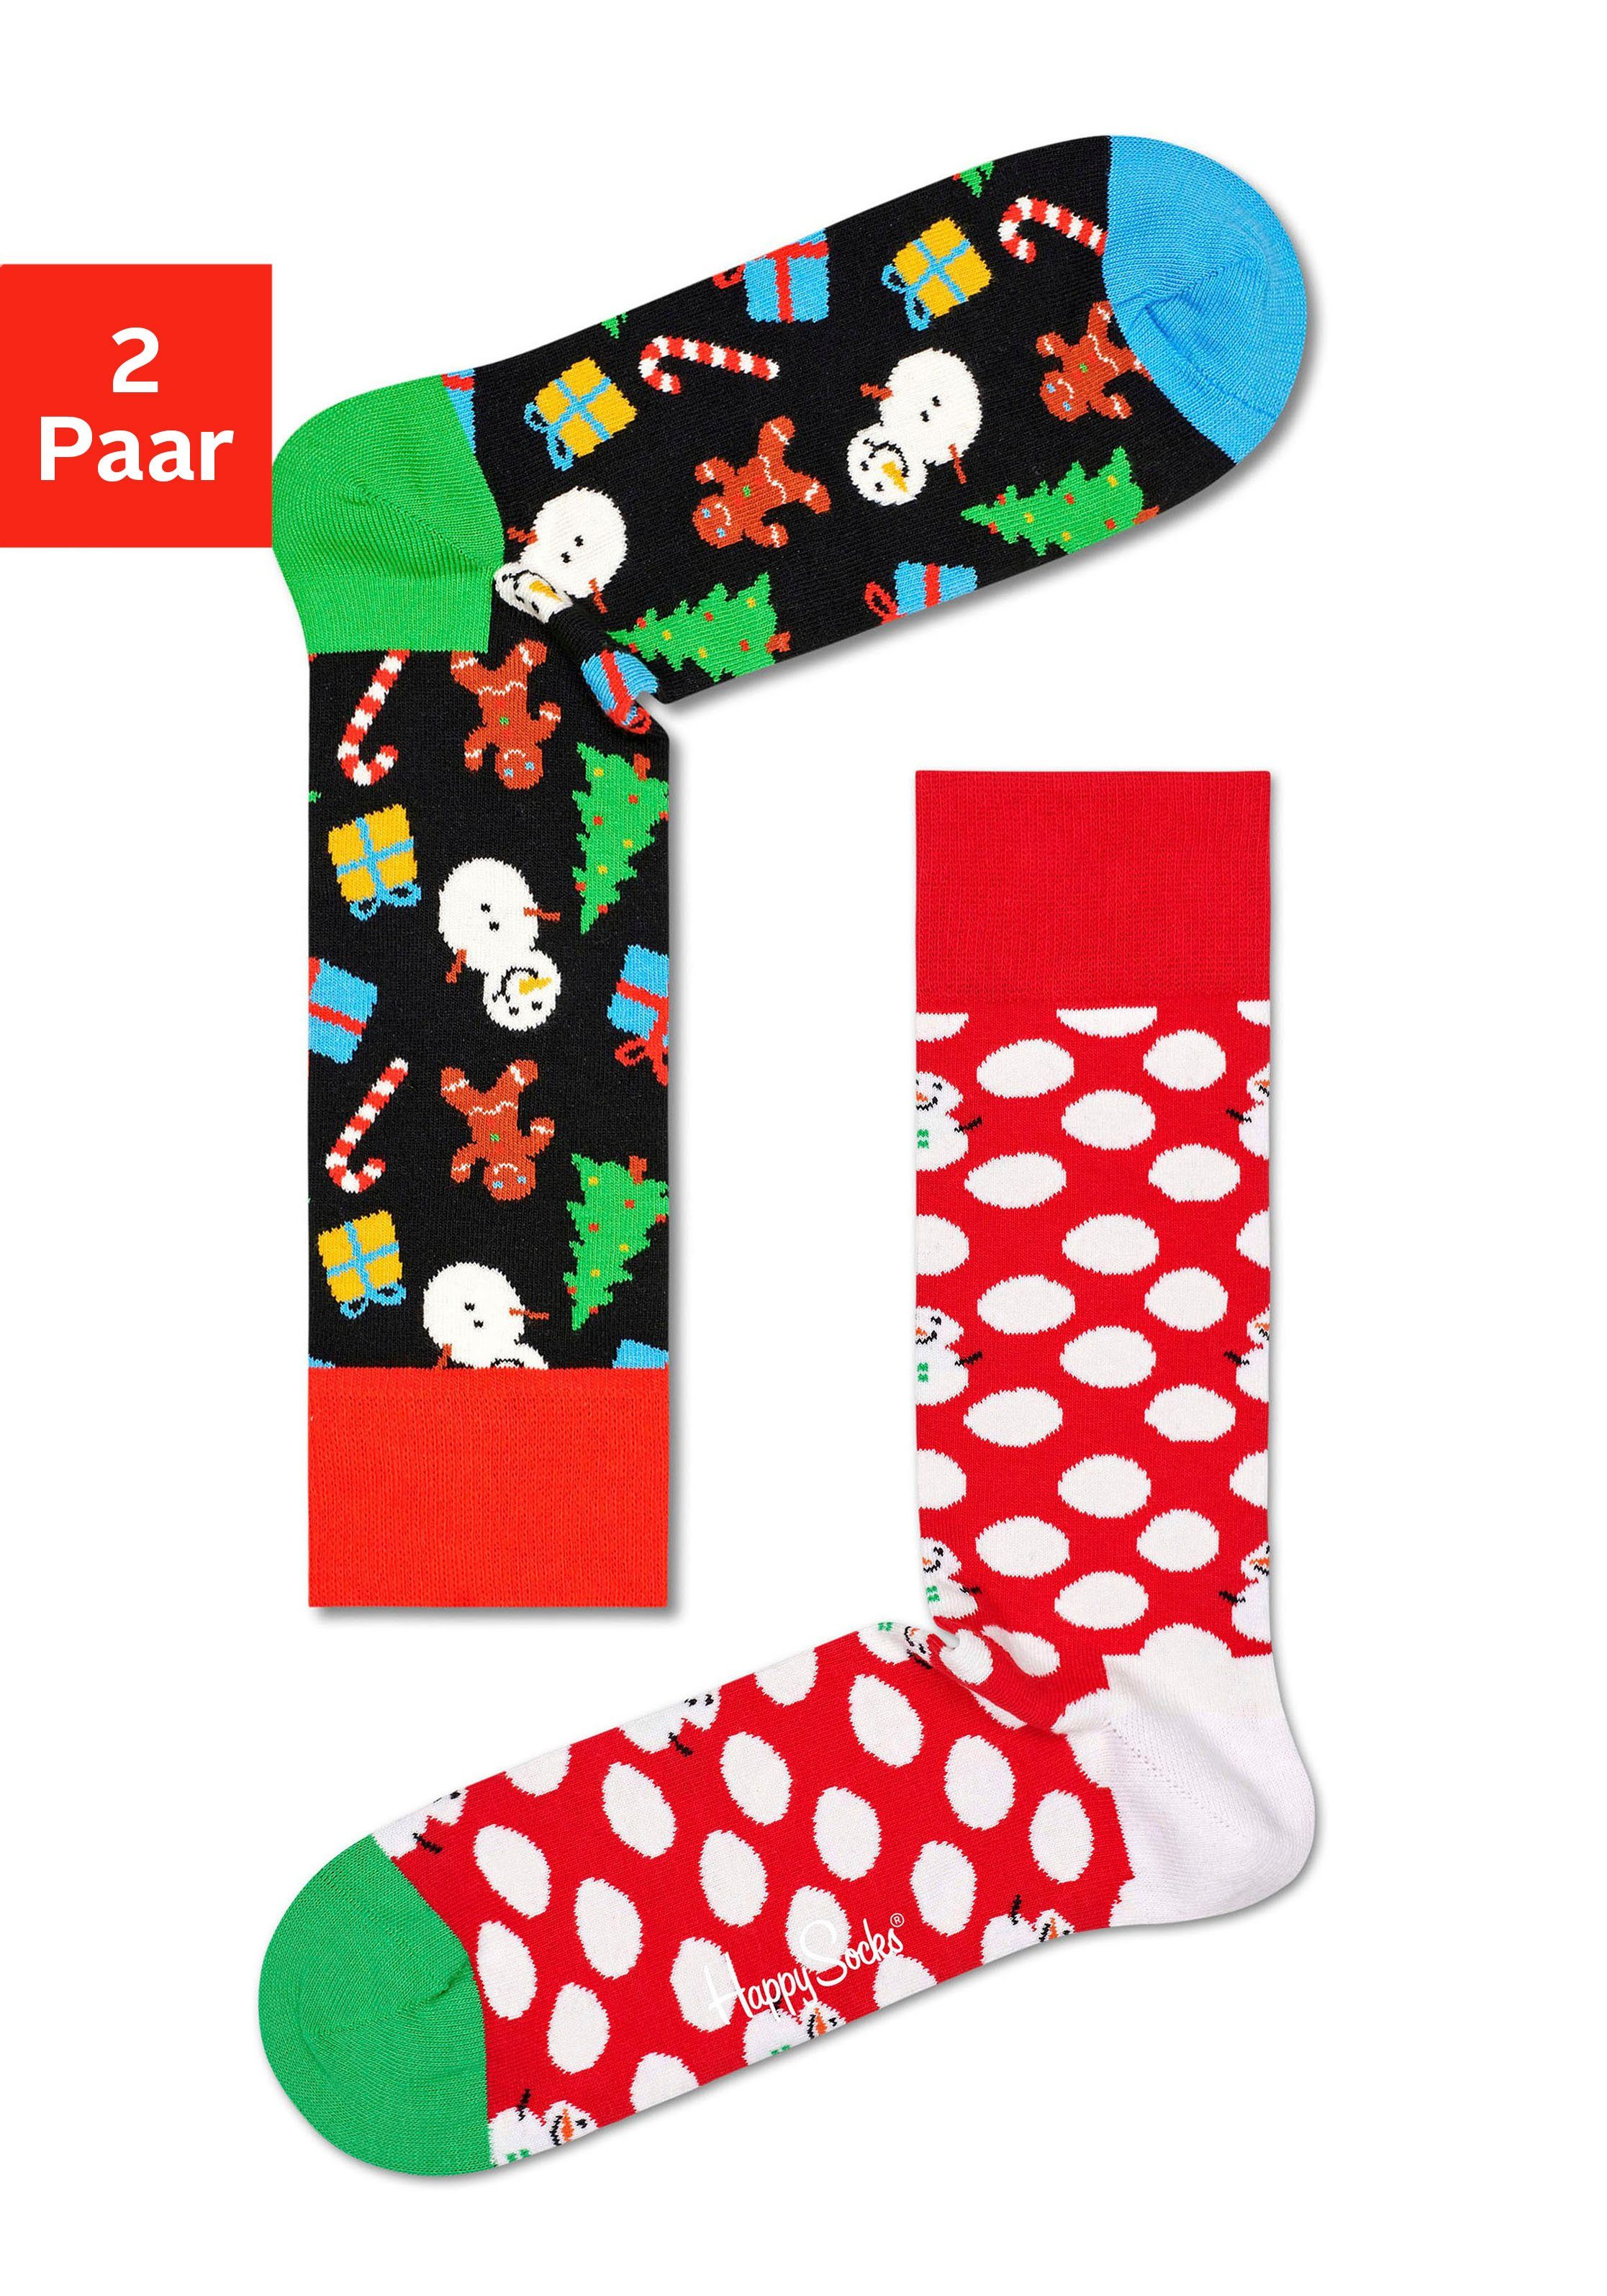 Happy Socks Socken (2-Paar) mit winterlich-weihnachtlichen Motiven